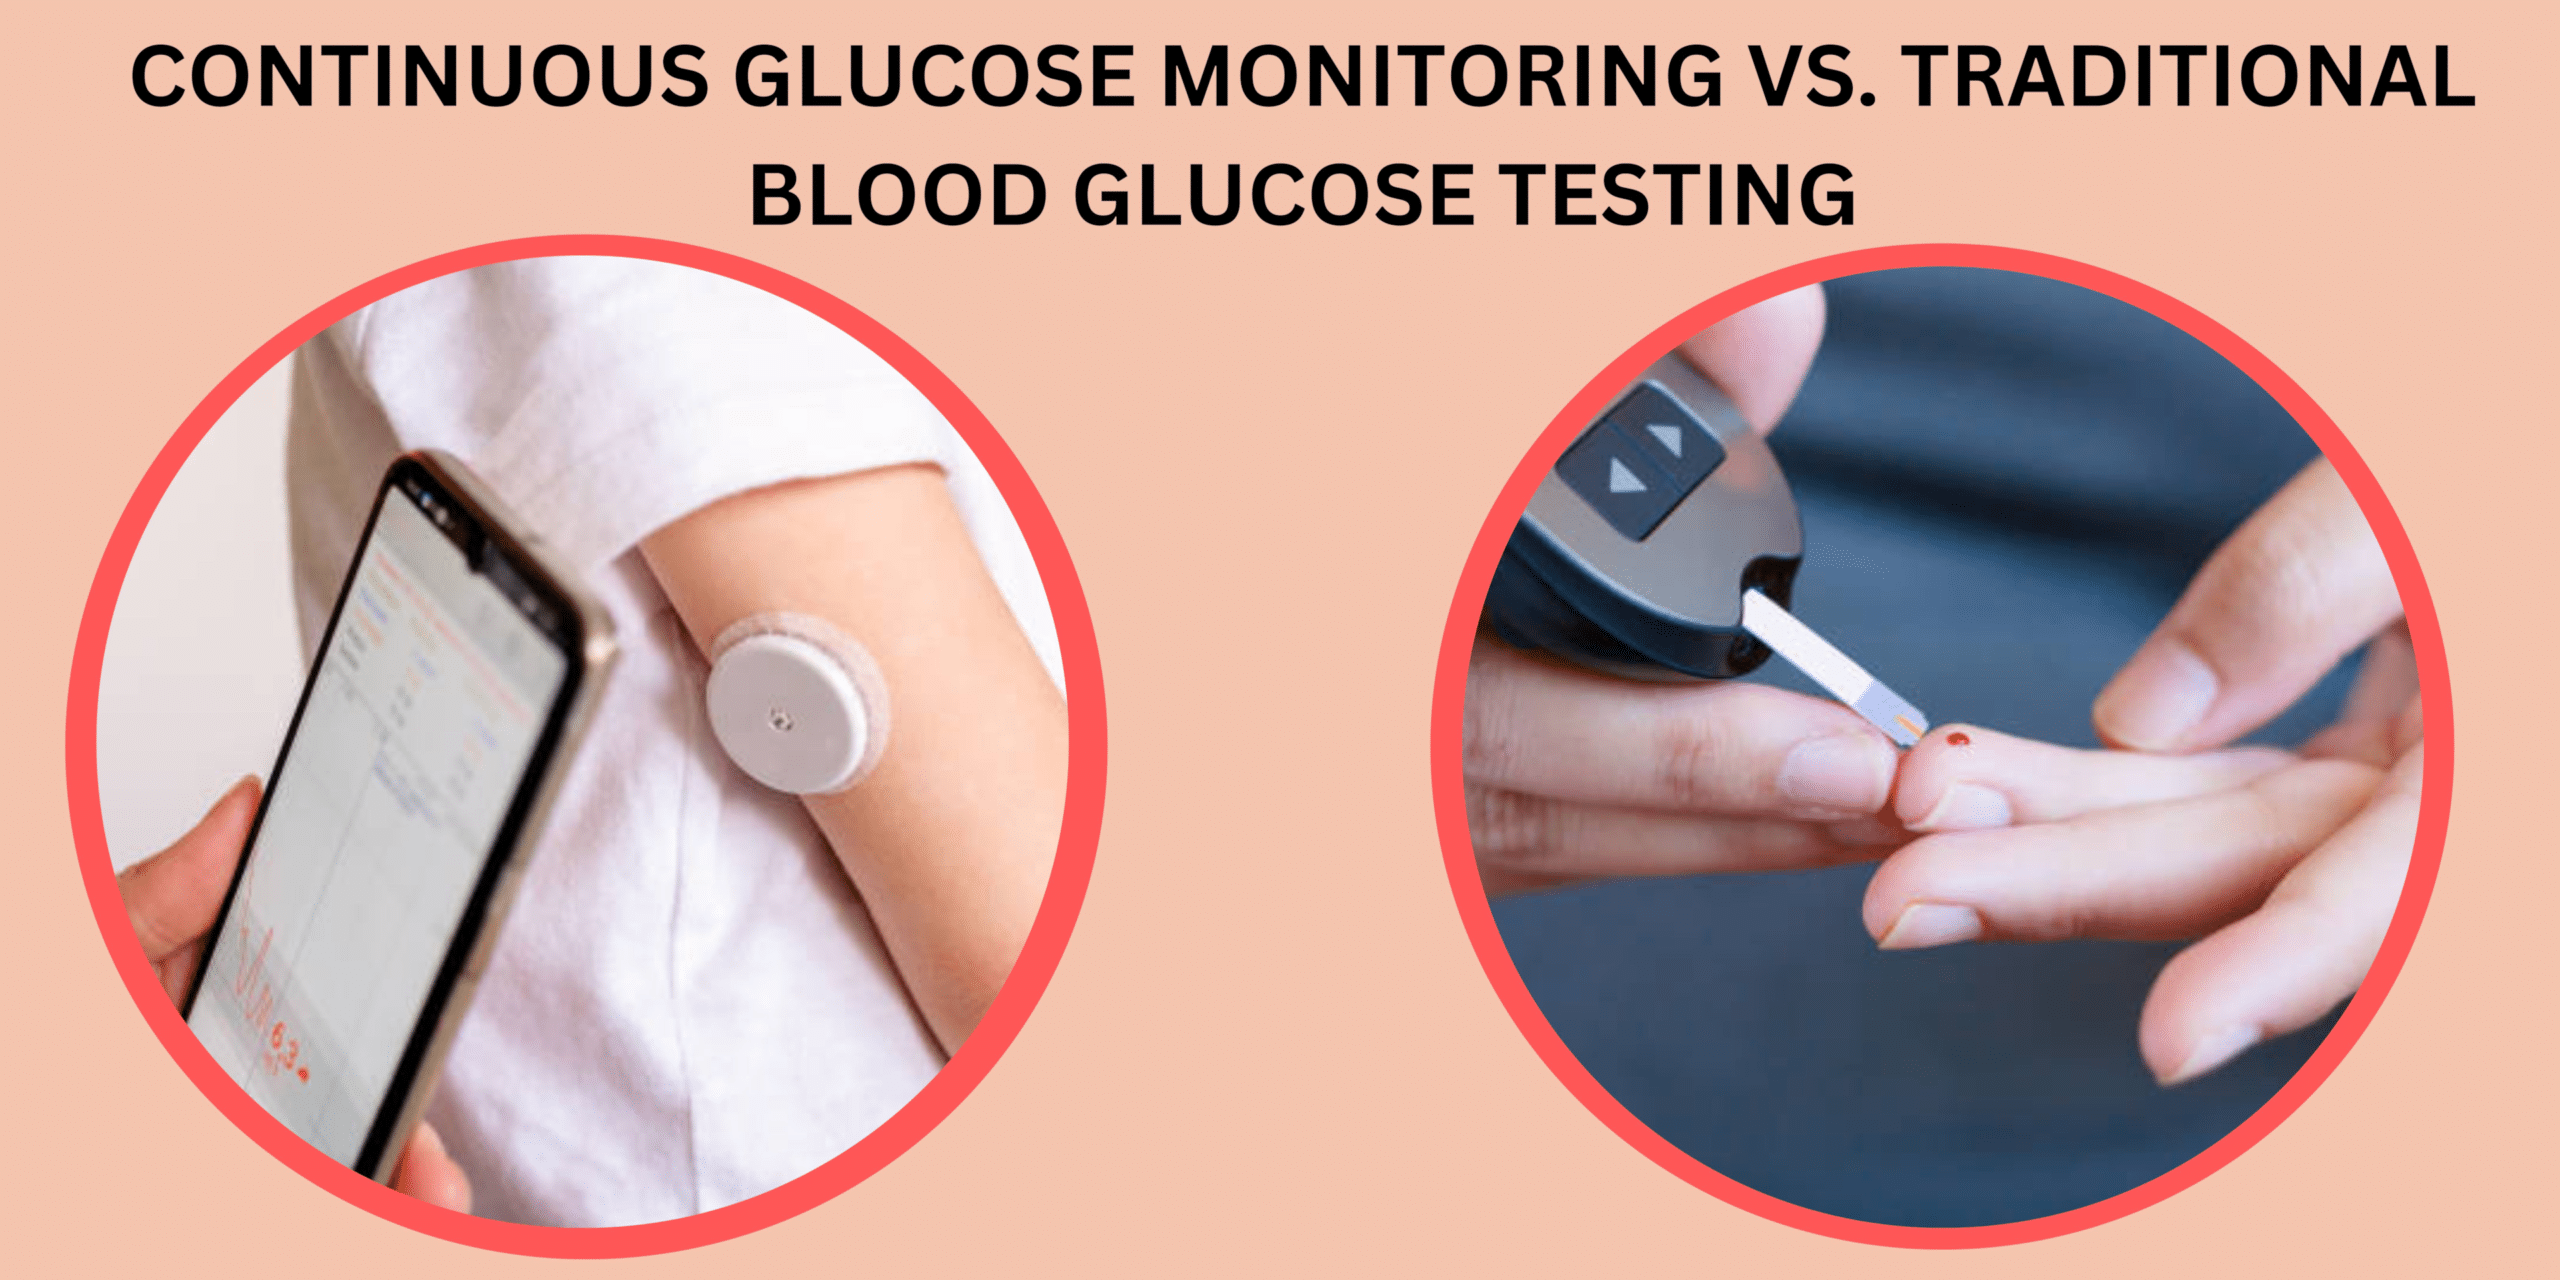 一篇关于连续血糖监测 Vs 的文章的图像。 传统血糖测试